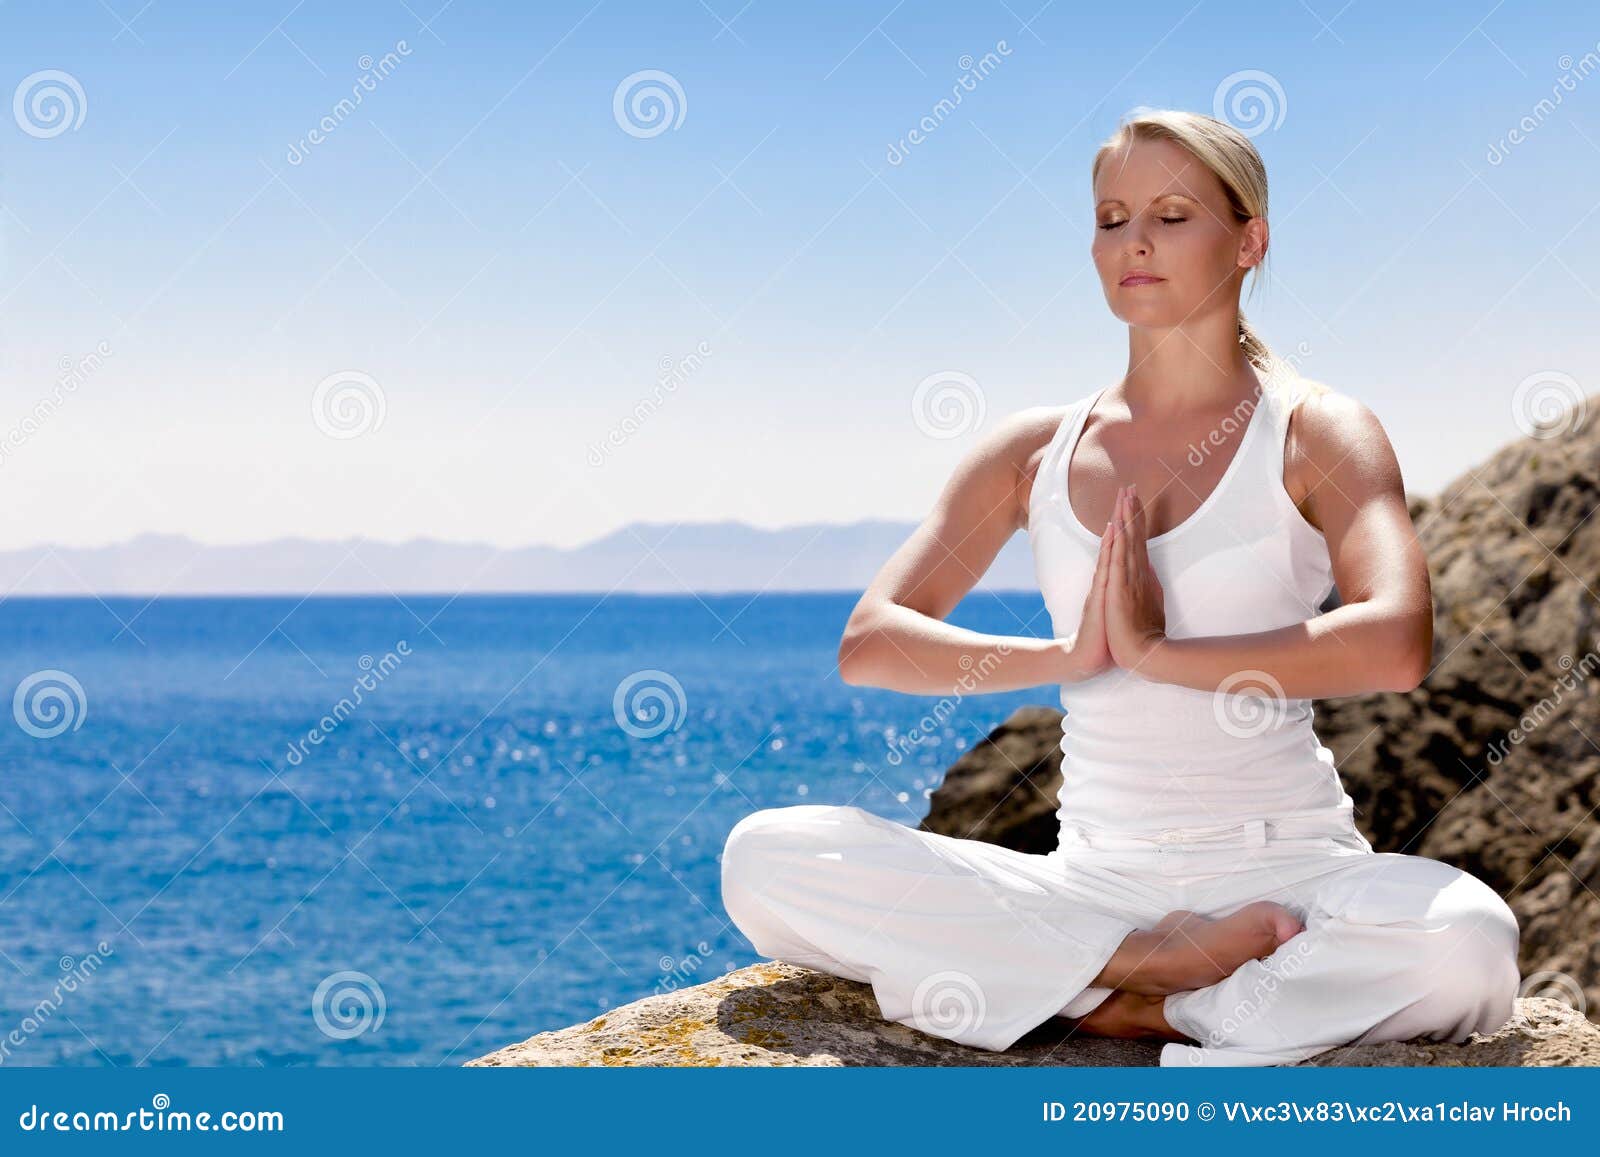 beautiful girl meditating in yoga pose